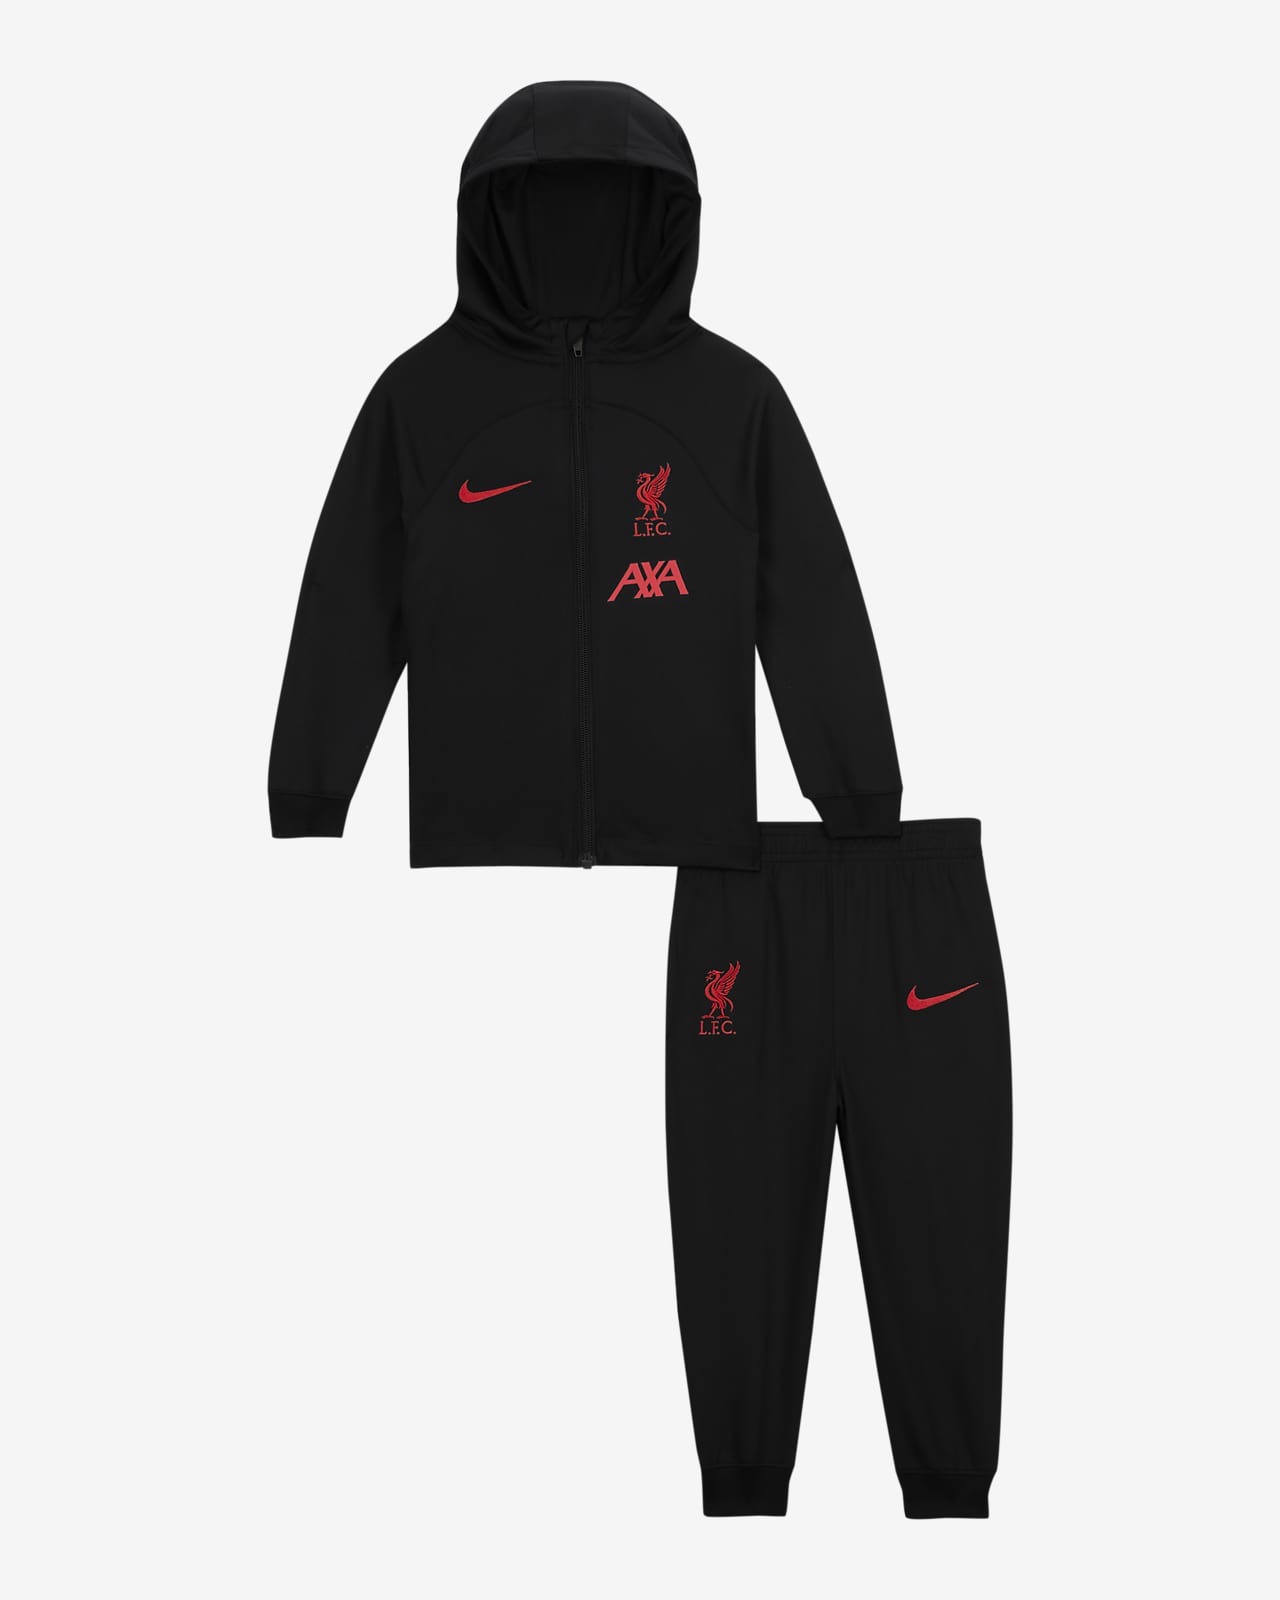 Segona equipació Strike Liverpool FC Xandall amb caputxa Nike Dri-FIT de futbol - Nadó i infant